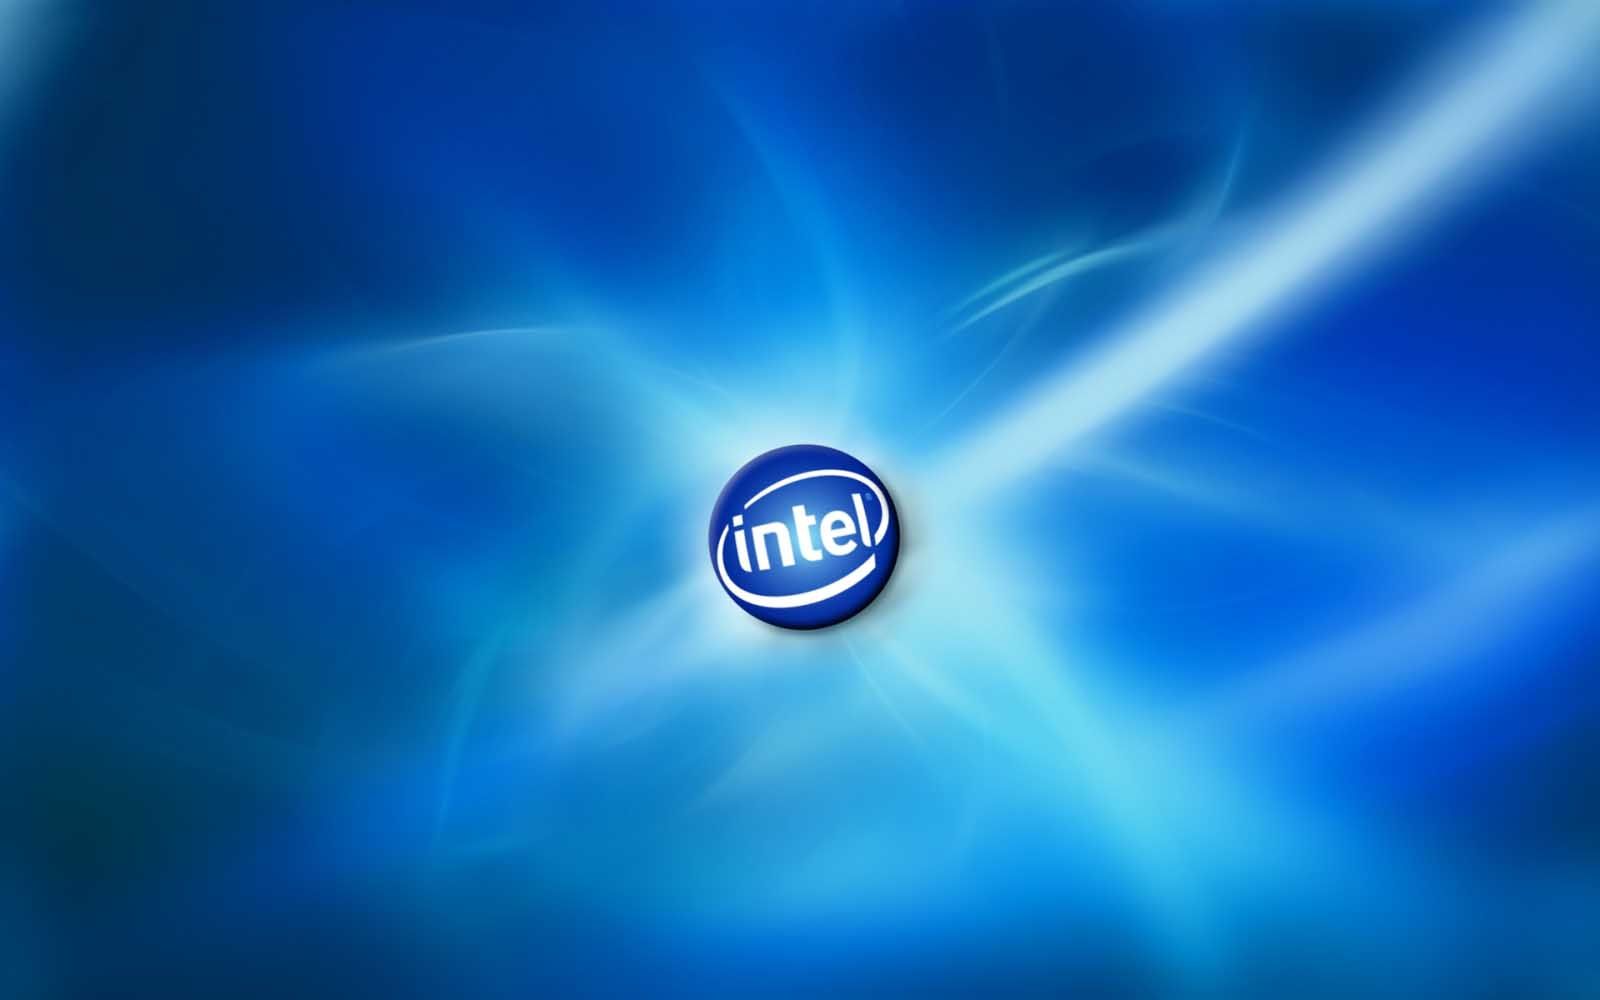 Intel Wallpaper from Logo to Motherboard in HD 1700 - Intel HD Wallpaper